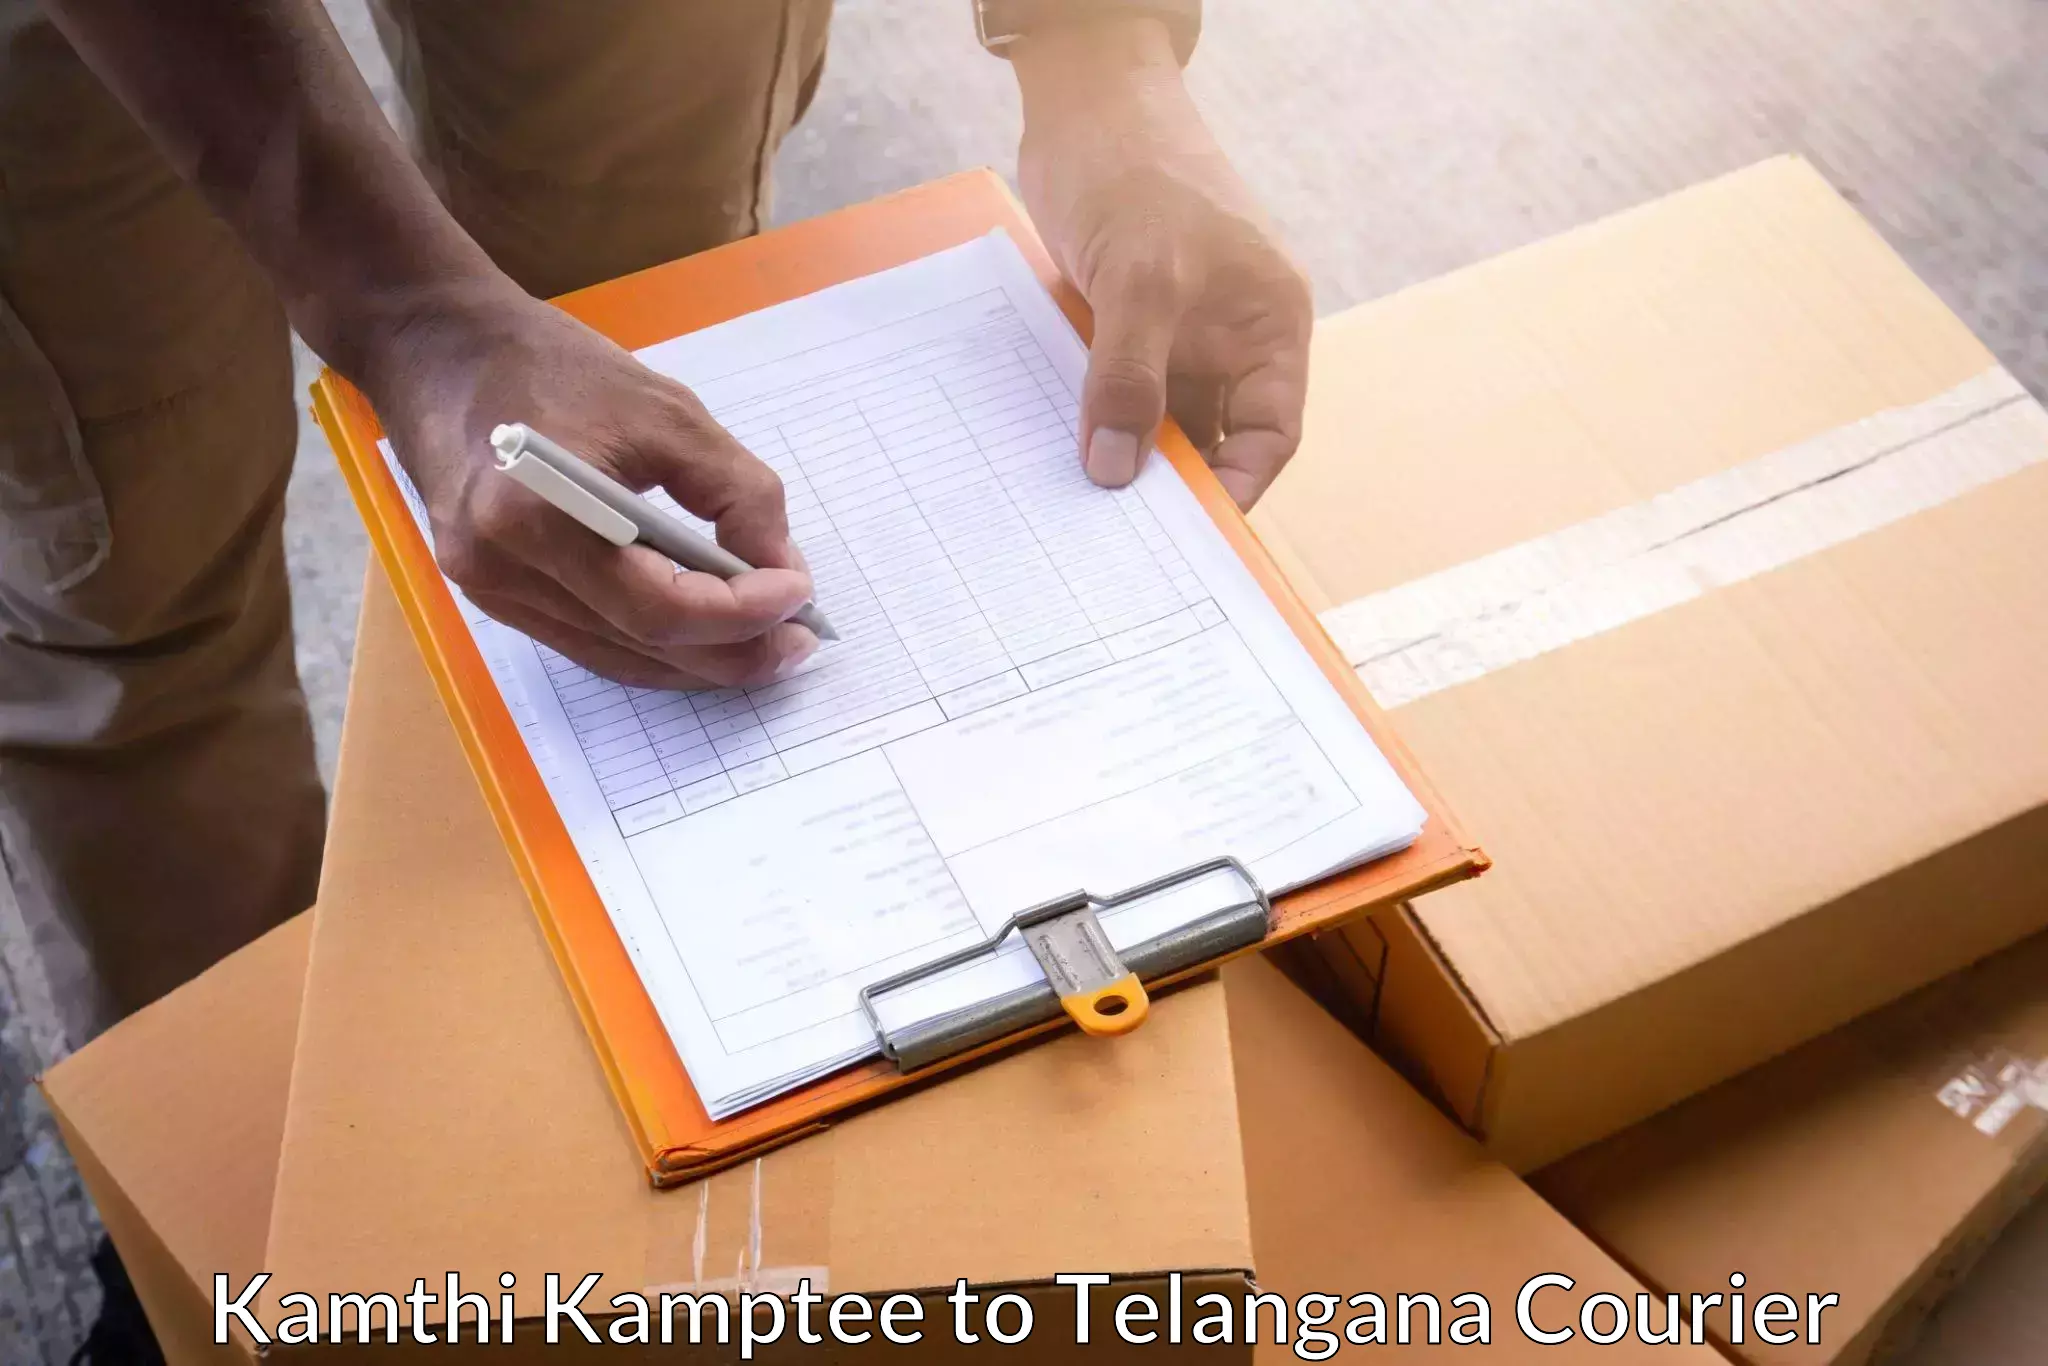 Comprehensive parcel tracking Kamthi Kamptee to Vikarabad